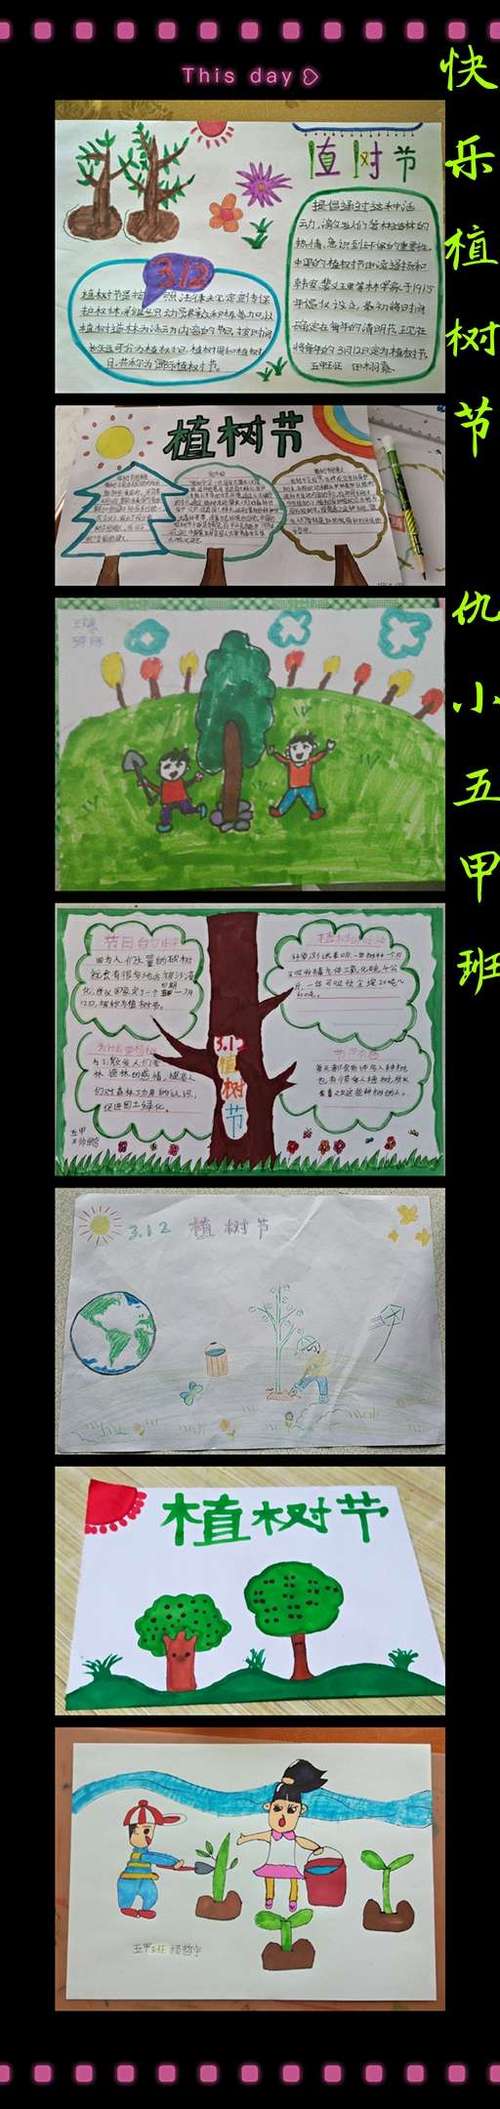 一张张绿意盎然的手抄报画和绘画作表达了学生们向往大自然拥抱大